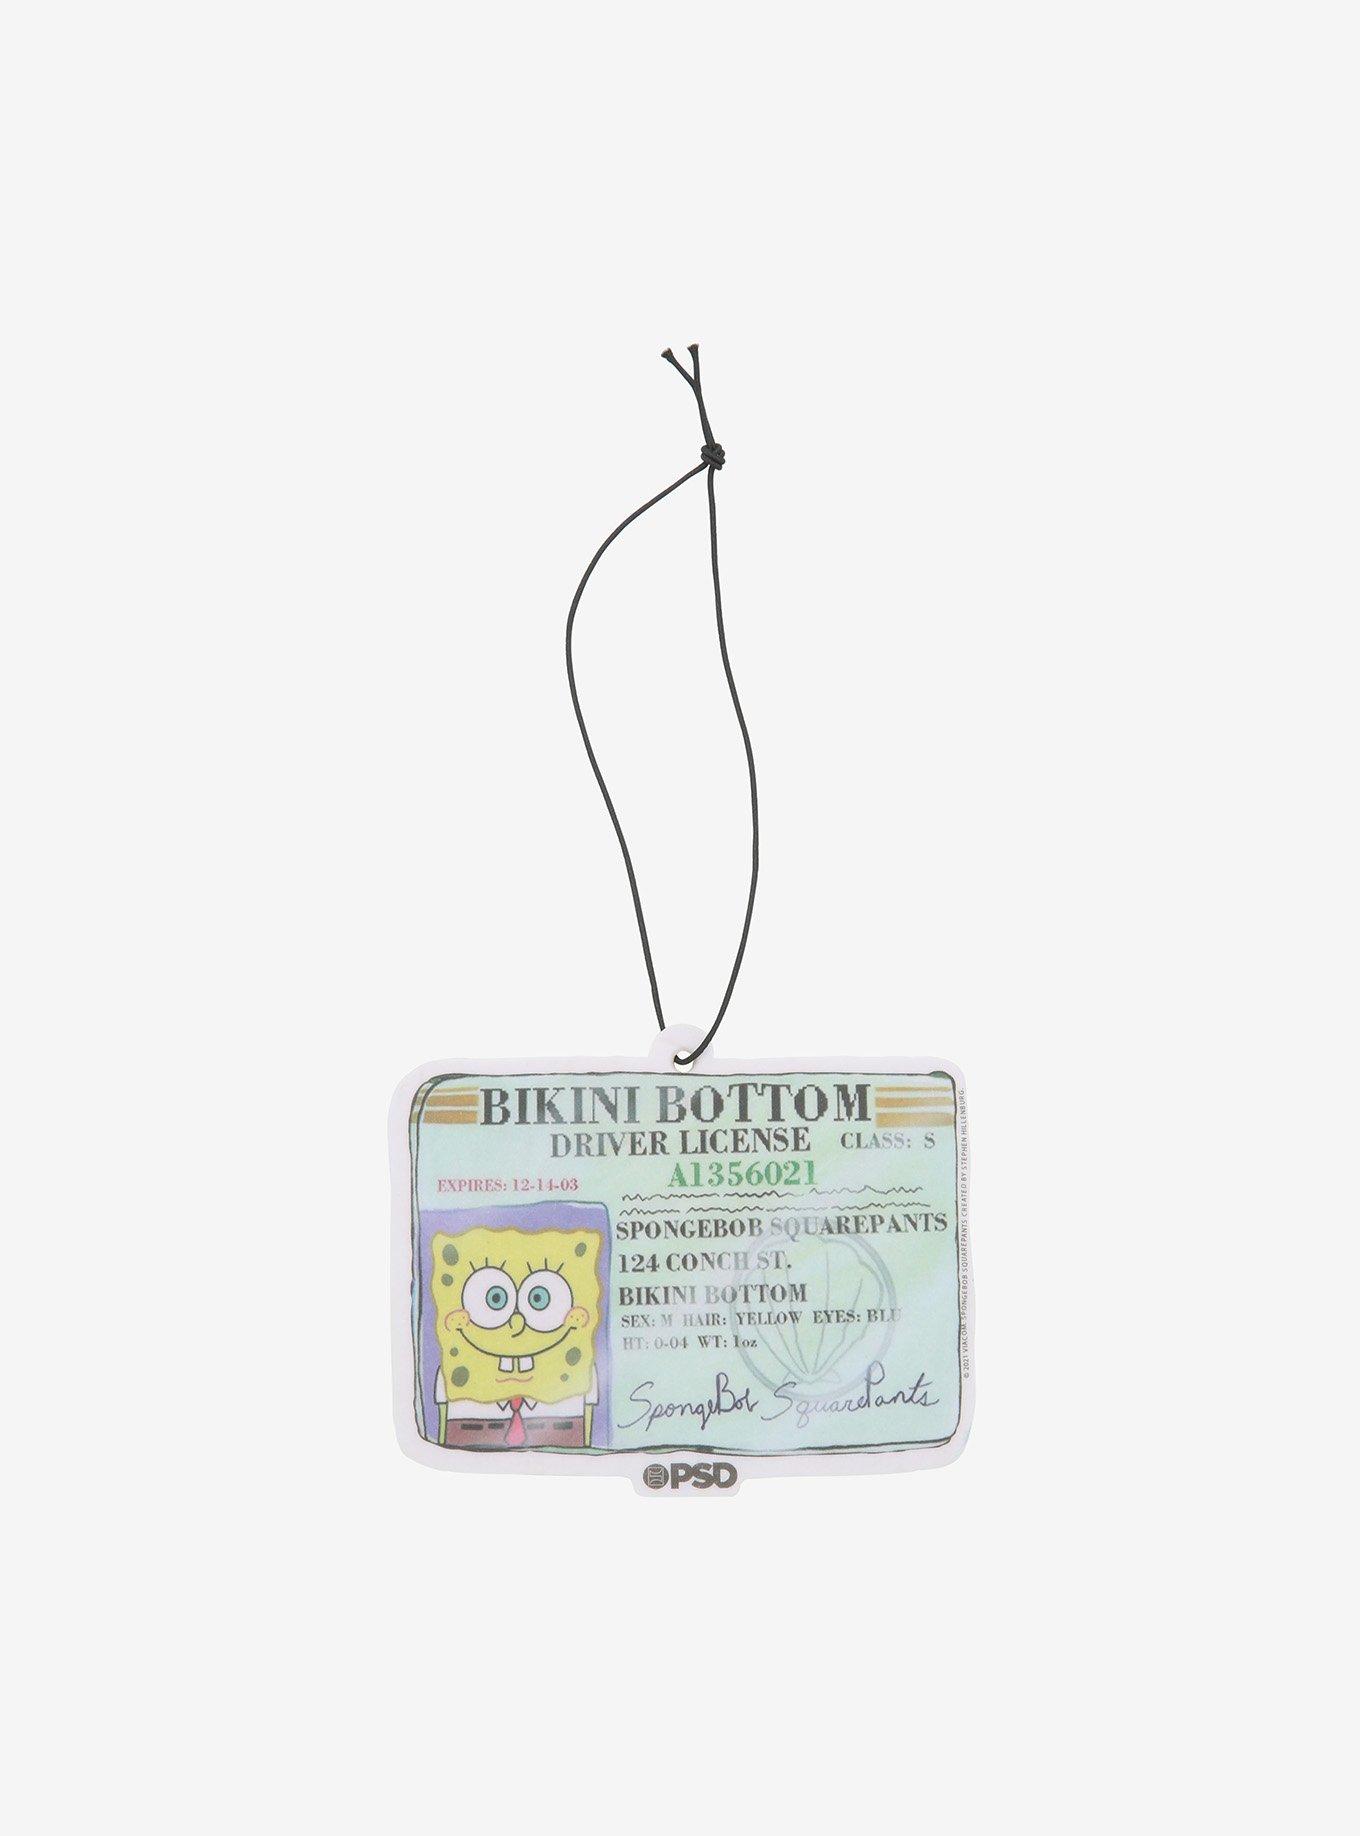 SpongeBob SquarePants Driver License Air Freshener